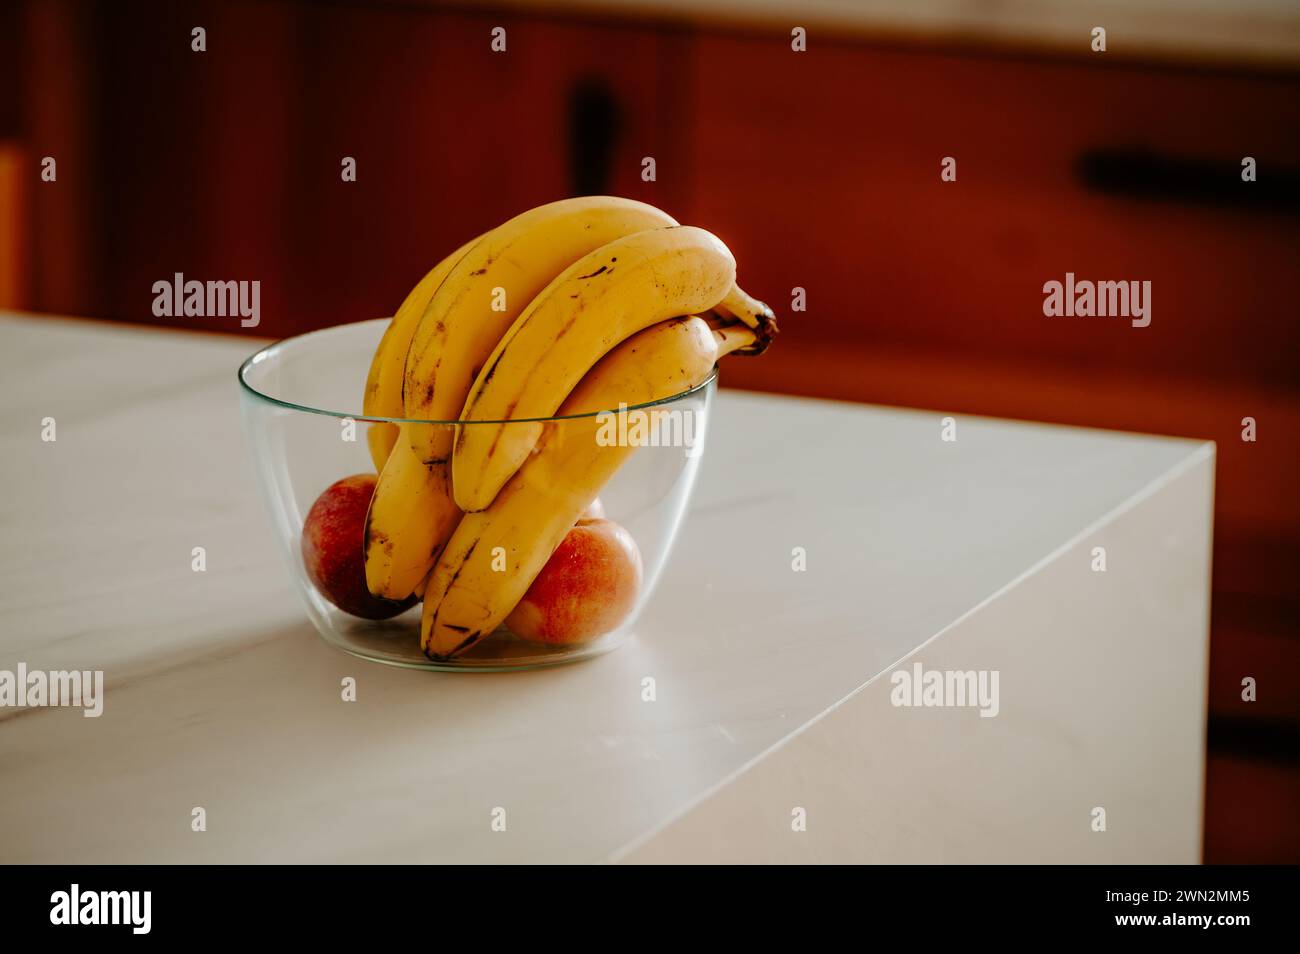 La luz del día resalta un plátano en un tazón de vidrio en el mostrador de la cocina Foto de stock